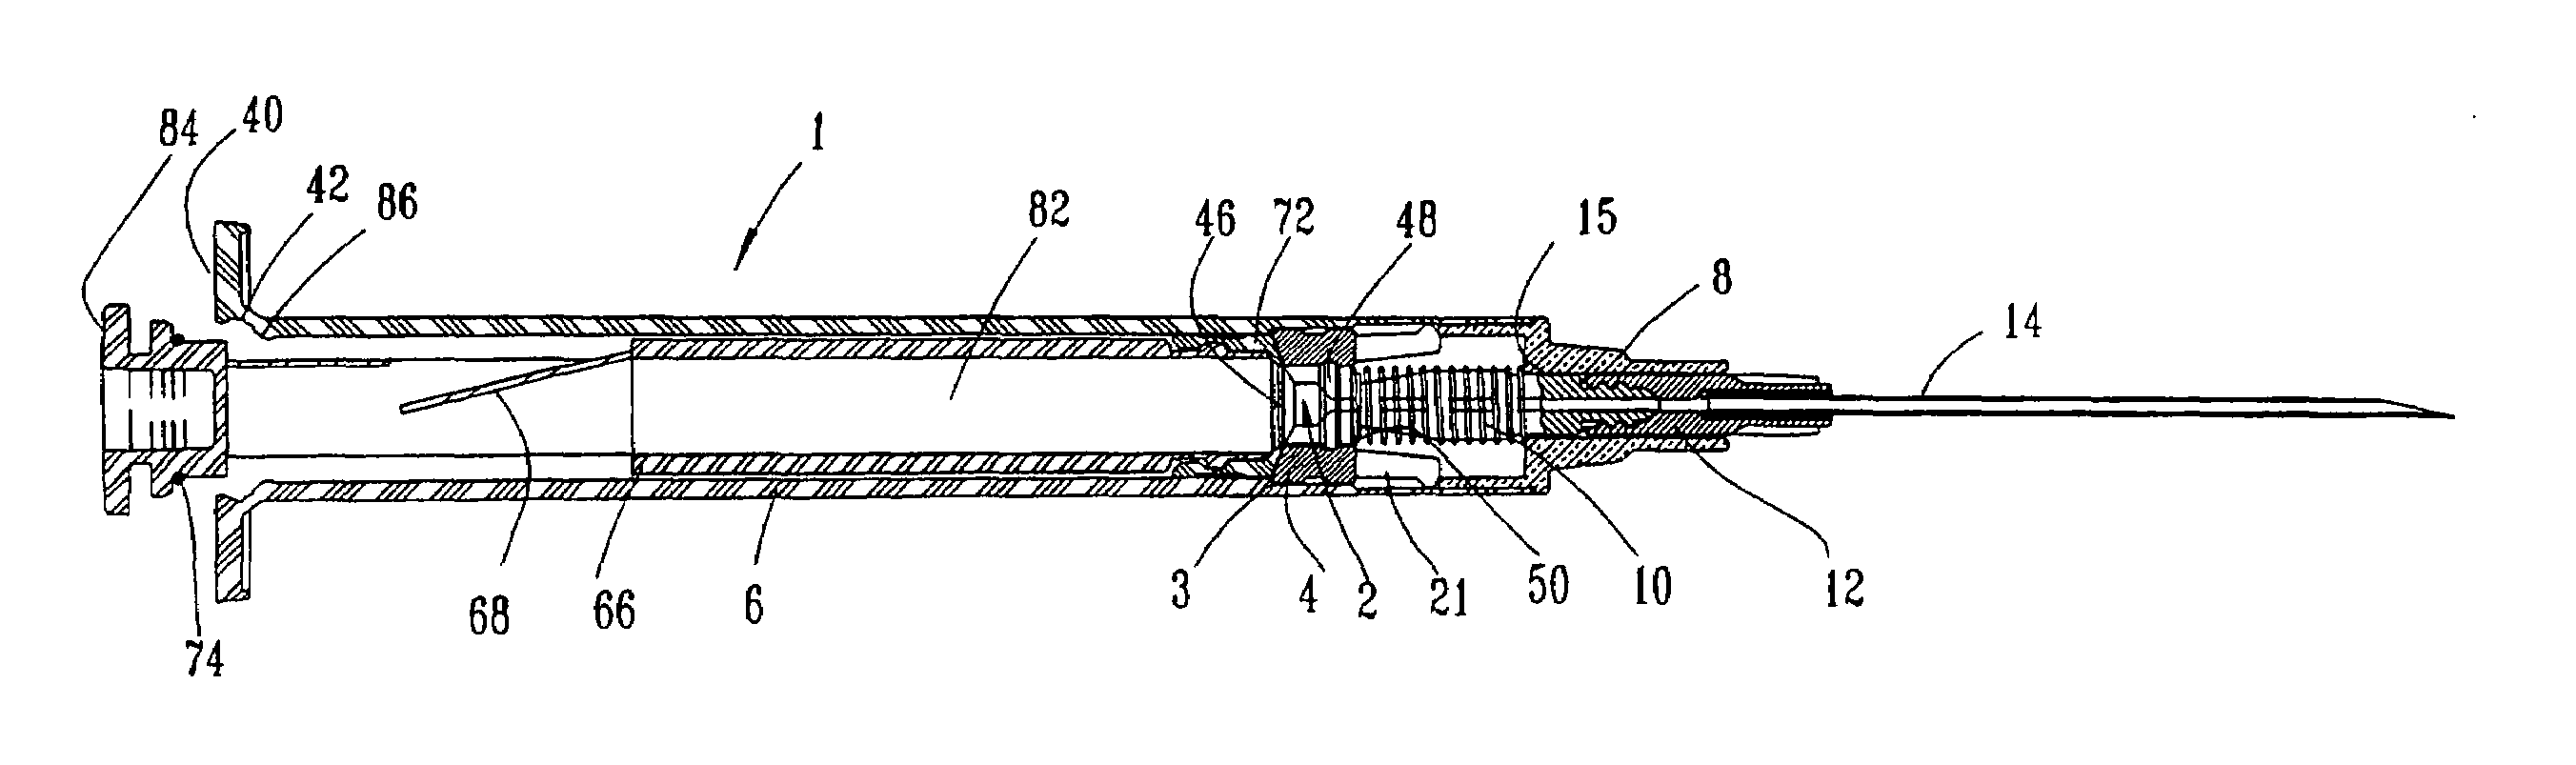 Interchangeable needle safety syringe